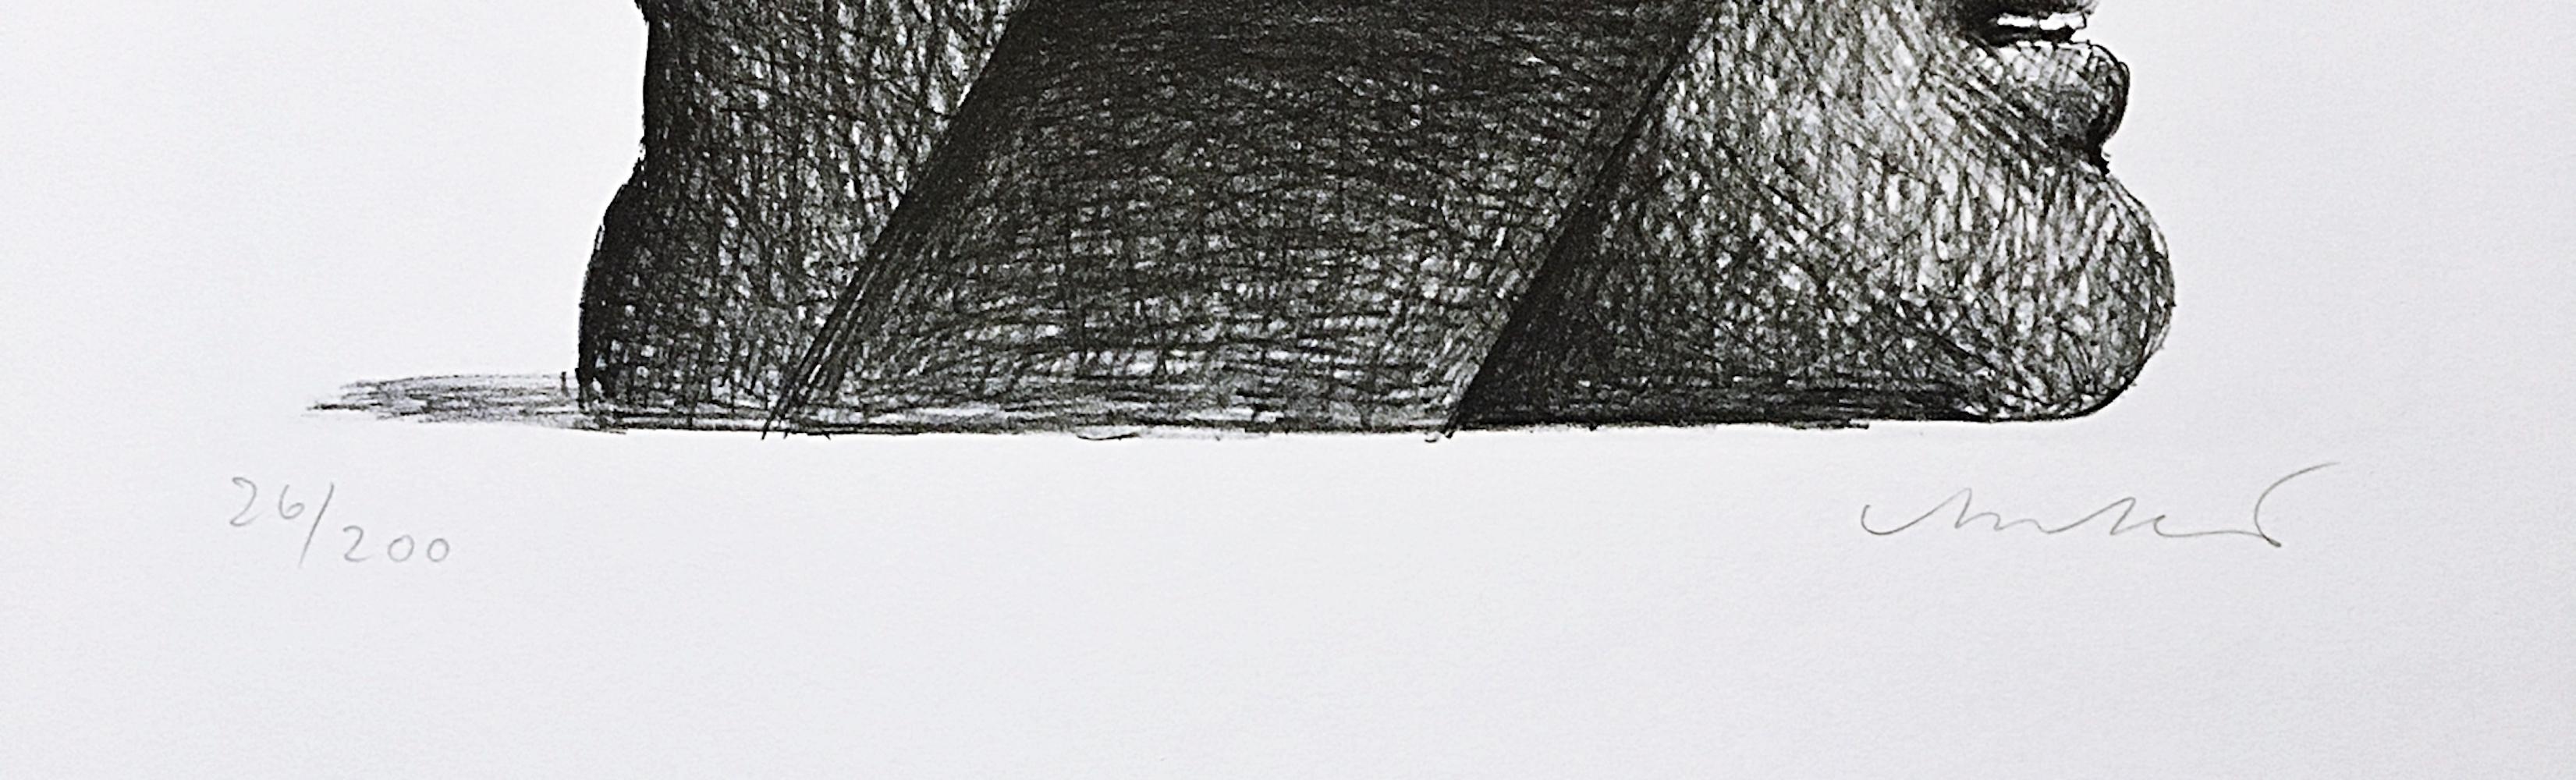 Horst Antes
Sans titre, du Portfolio de la Société suisse des arts (Lutze 629), 1975
Lithographie sur papier avec bords décolorés. 
Signé à la main et numéroté 26/200 par l'artiste au recto.
26 × 19 3/4 pouces
Non encadré
Cette estampe fantaisiste